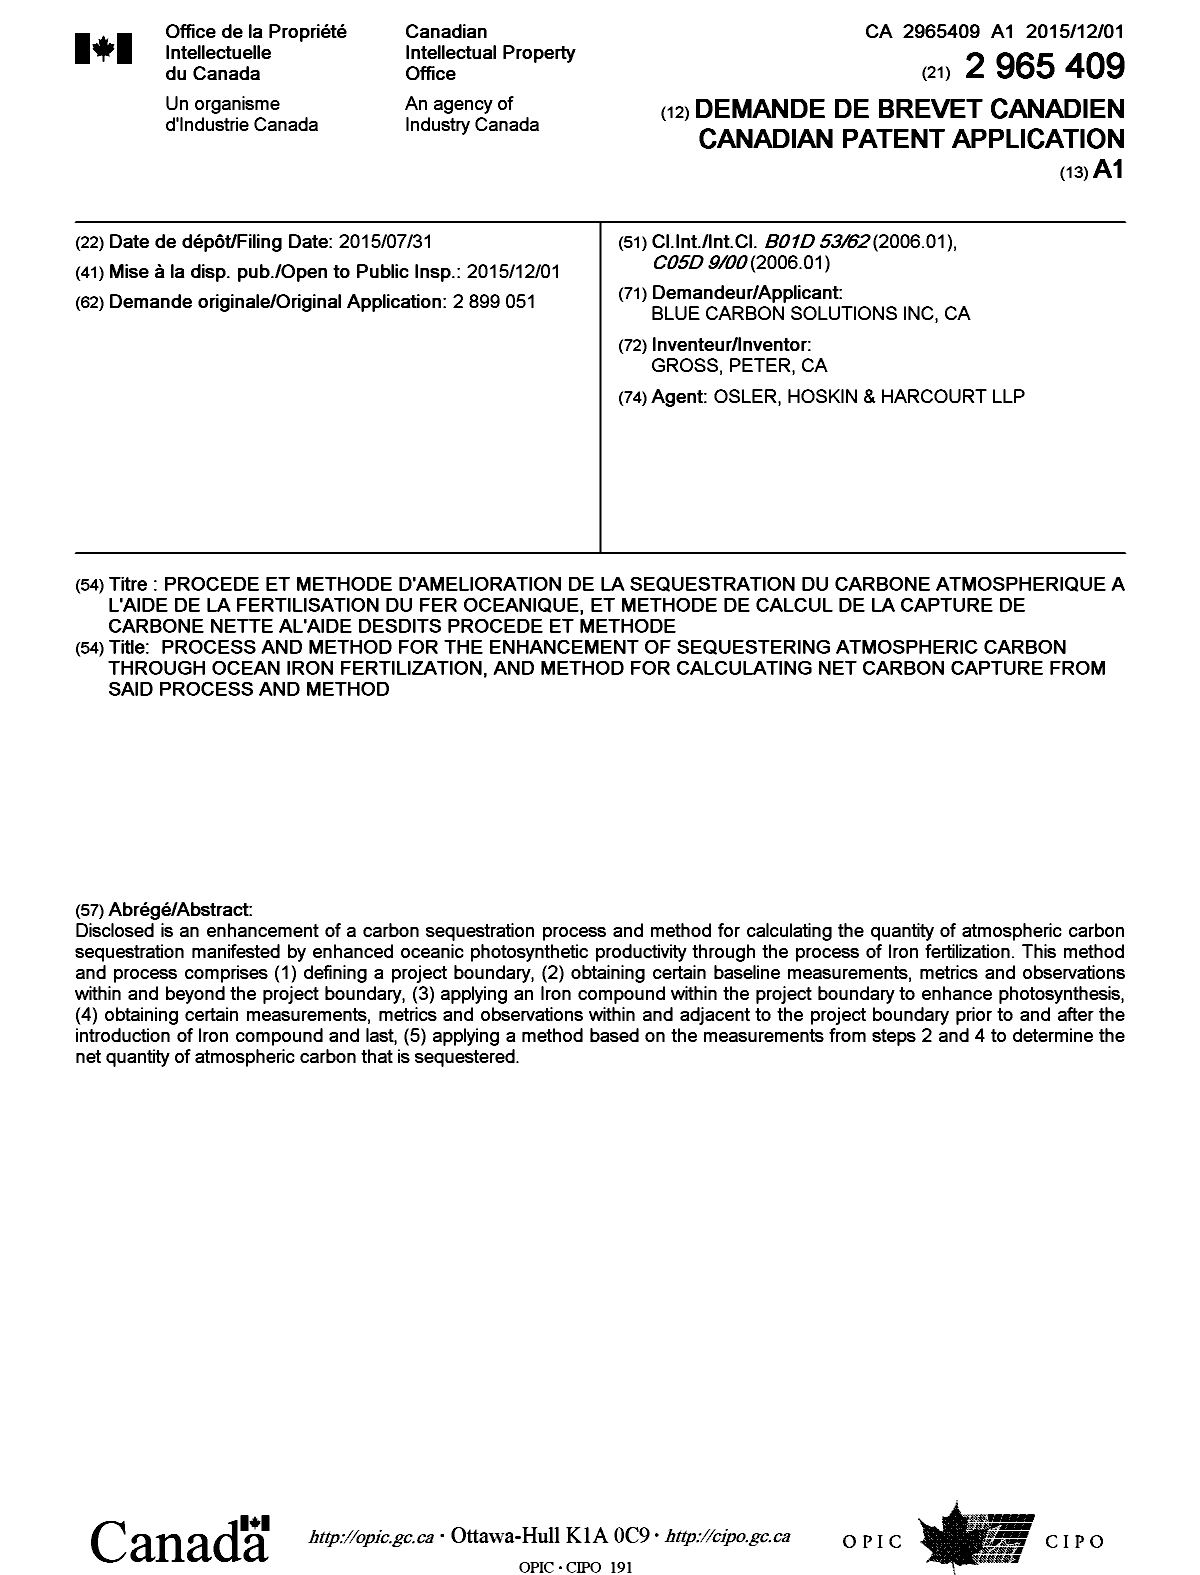 Document de brevet canadien 2965409. Page couverture 20170608. Image 1 de 1